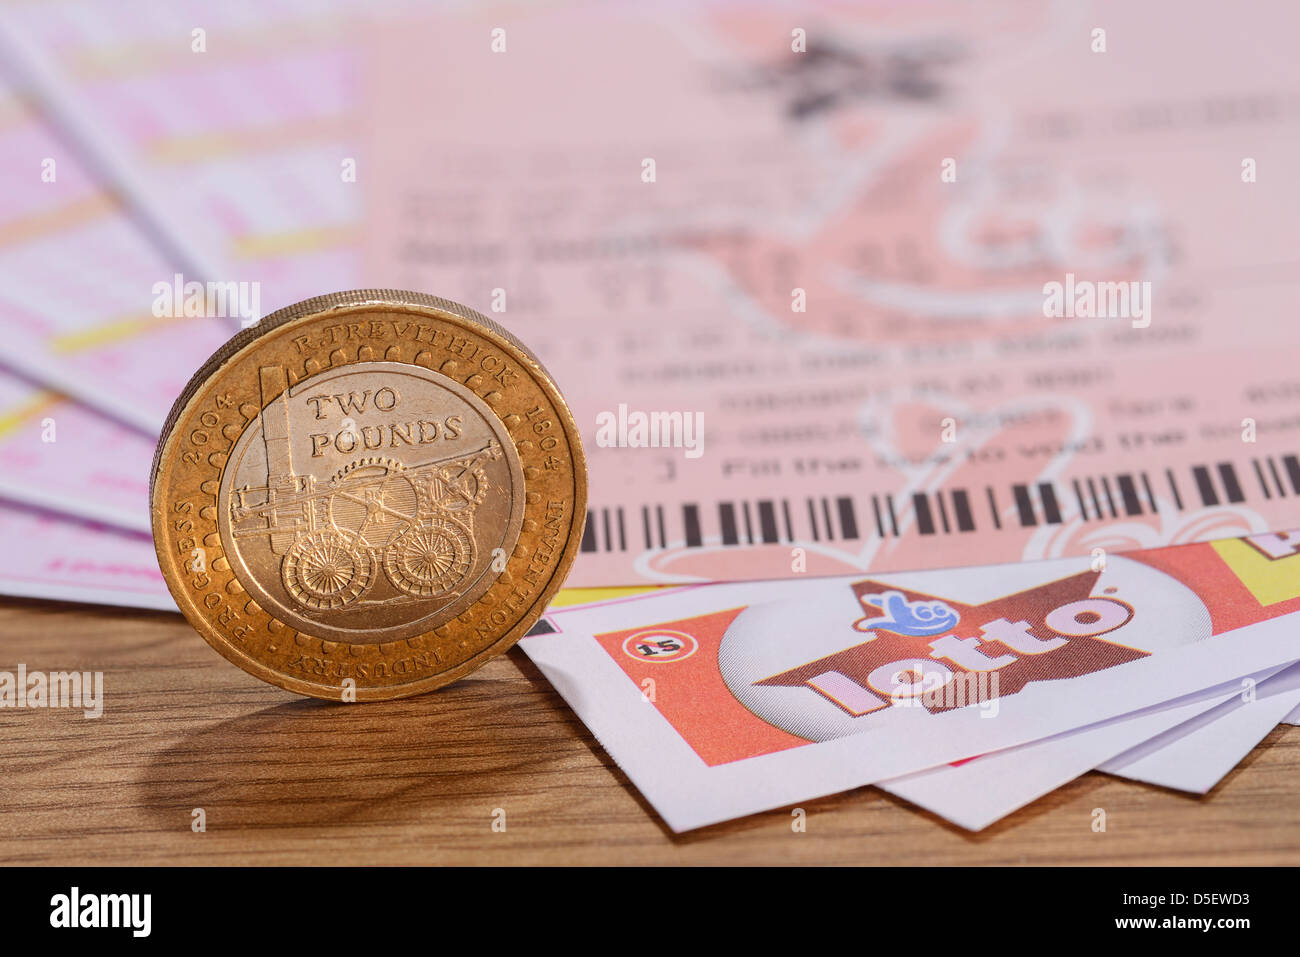 UK Lotto des billets avec une pièce de deux livres Banque D'Images